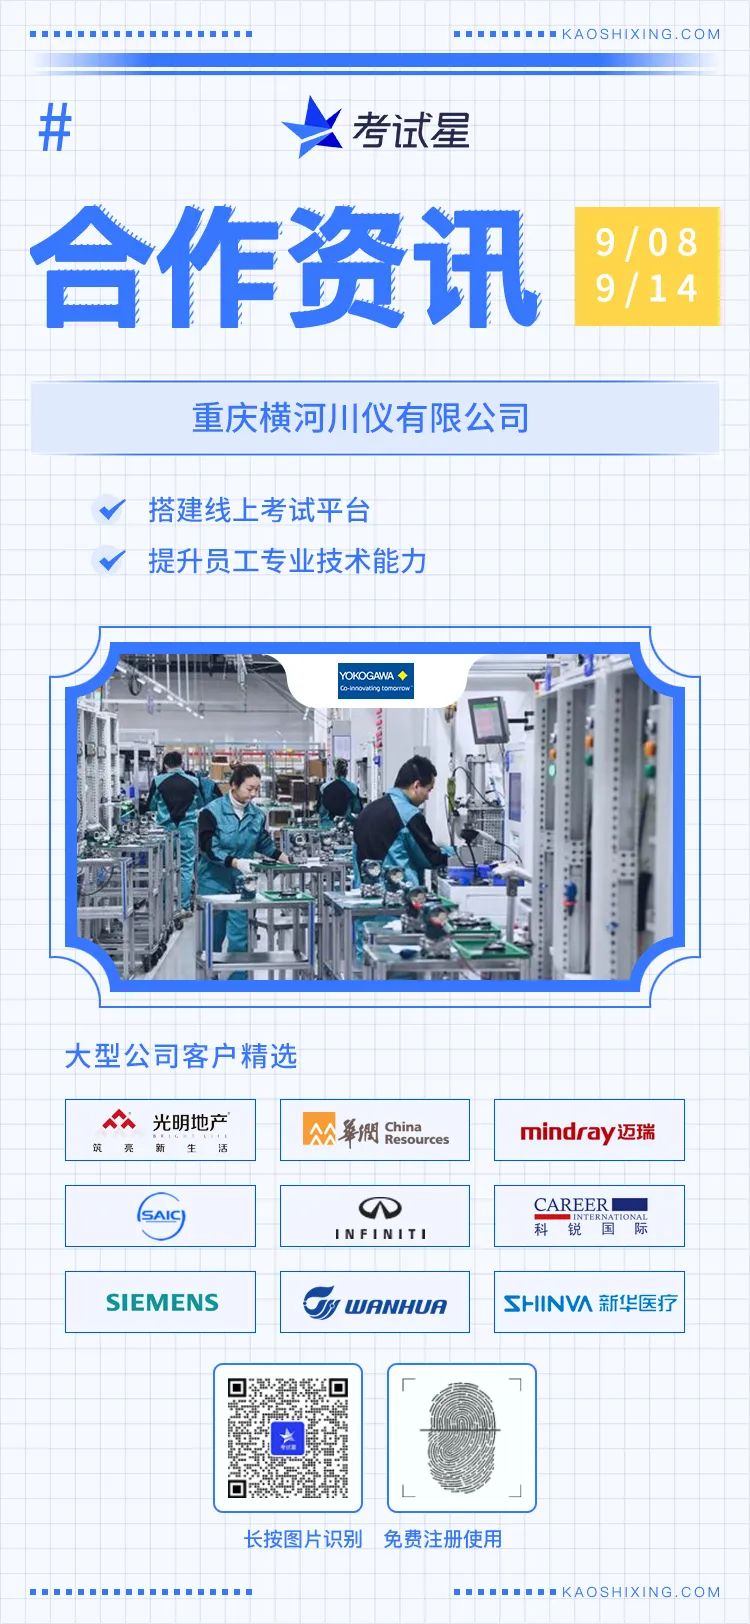 重庆横河川仪有限公司-线上考试平台